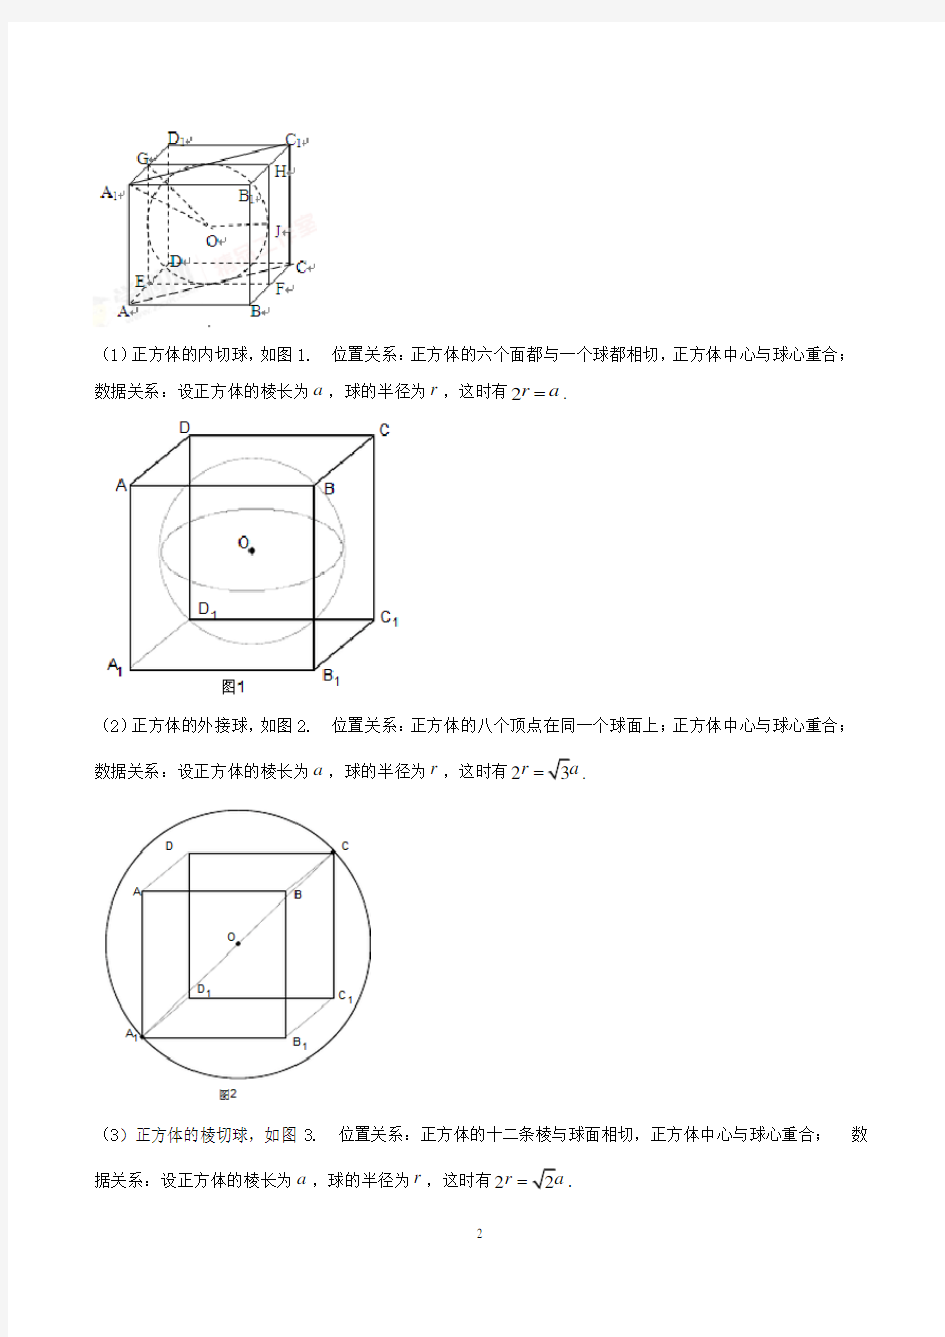 数学研究课题---空间几何体的外接球与内切球问题